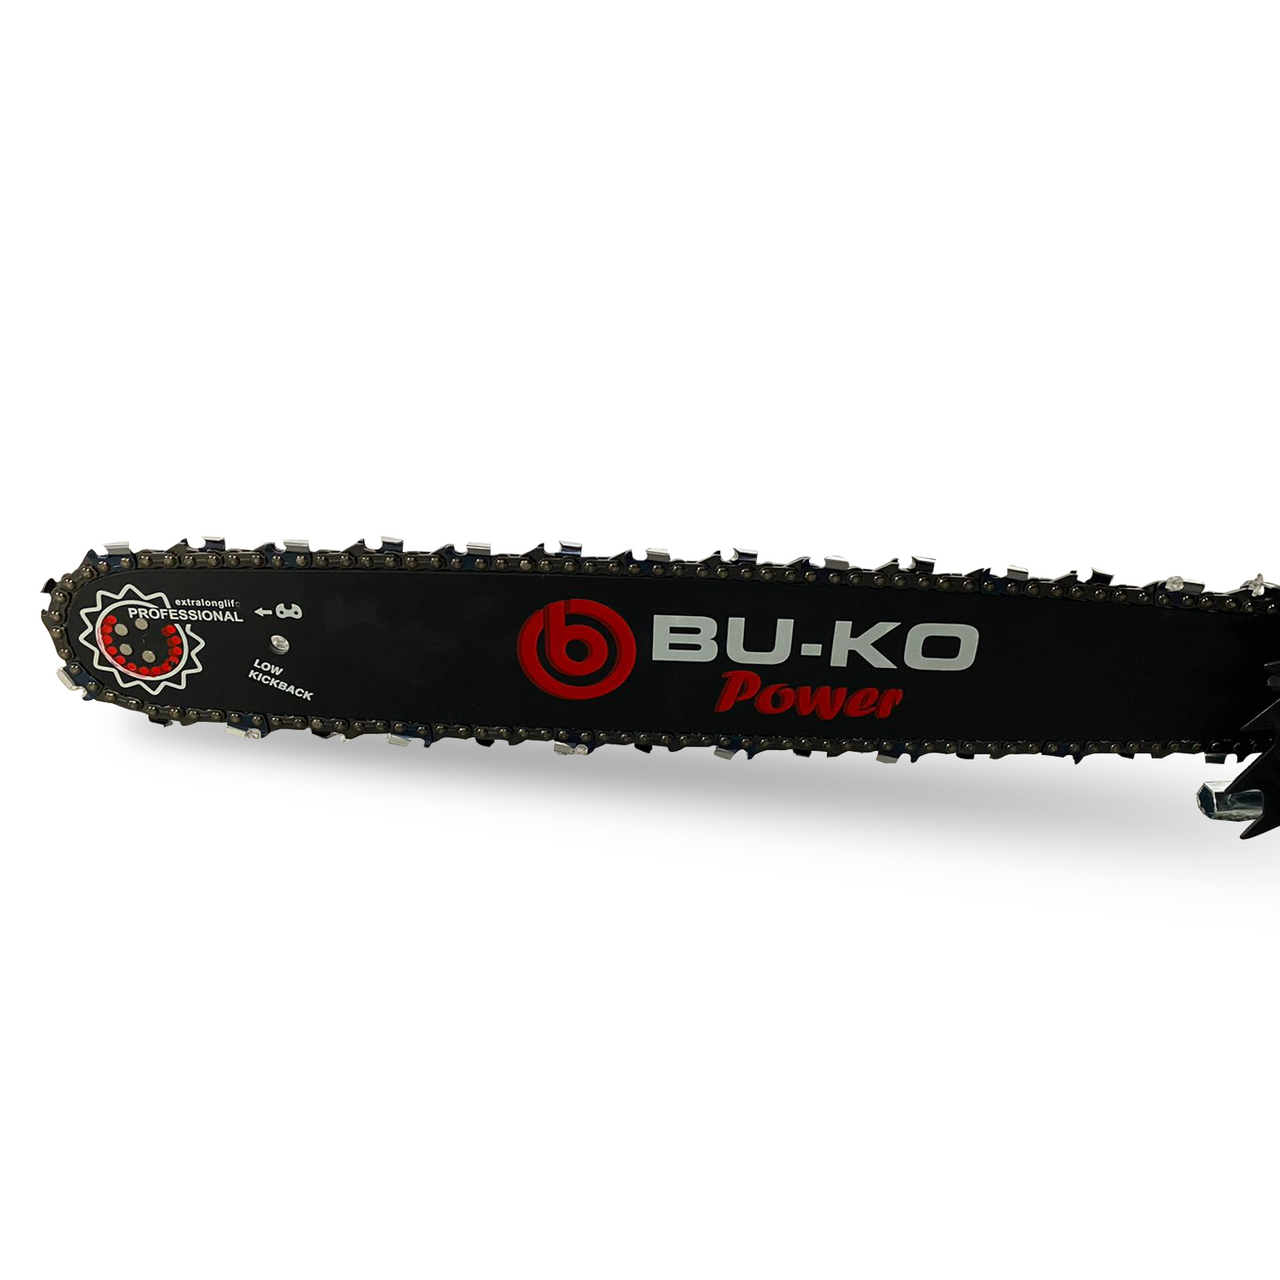 BU-KO 65cc Petrol Chainsaw 3.4HP 20″ Bar & 2 x Chains + 16″ Bar & 2x Chains